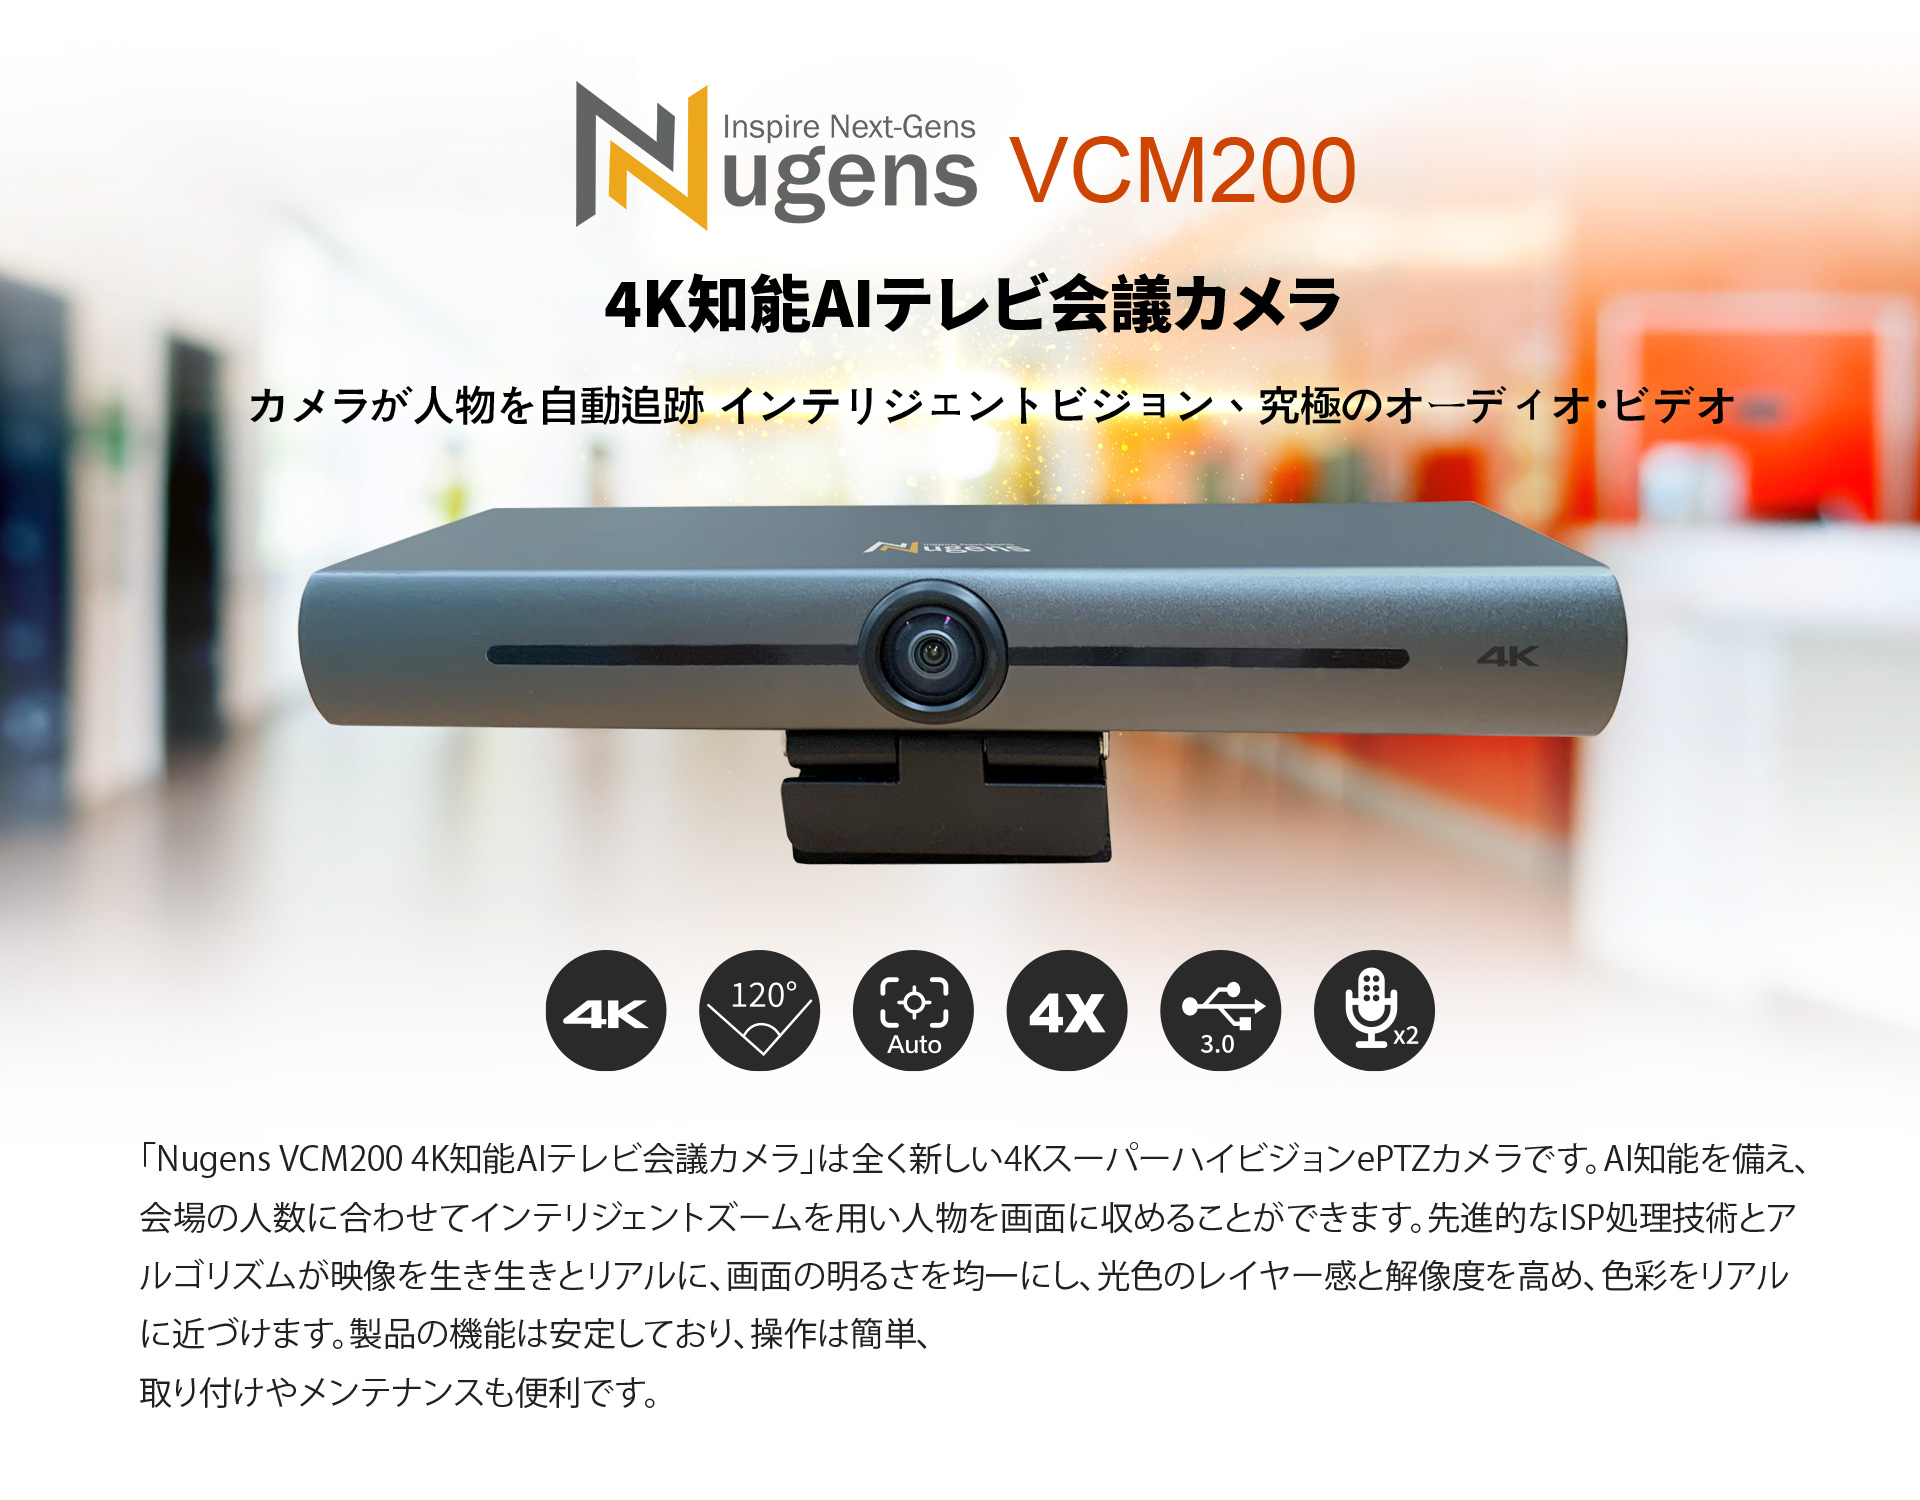 AI 4K Video Conference Camera